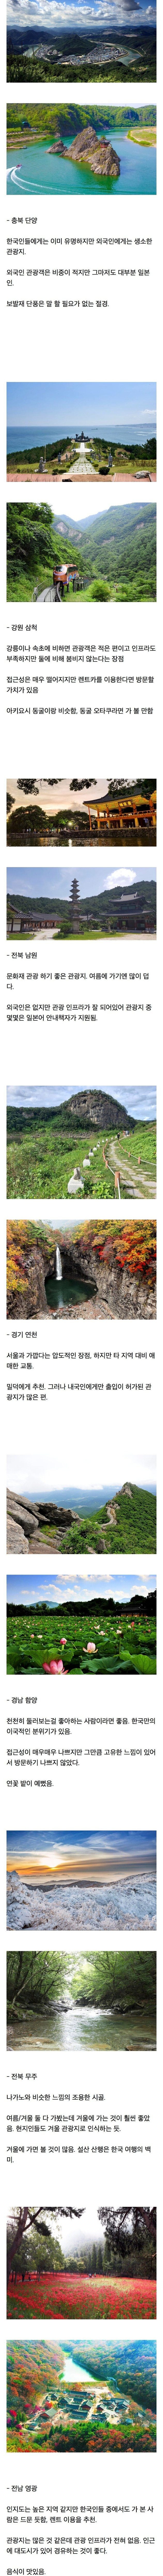 일본 야후에서 뽑은 안 유명하지만 좋은 한국 관광지